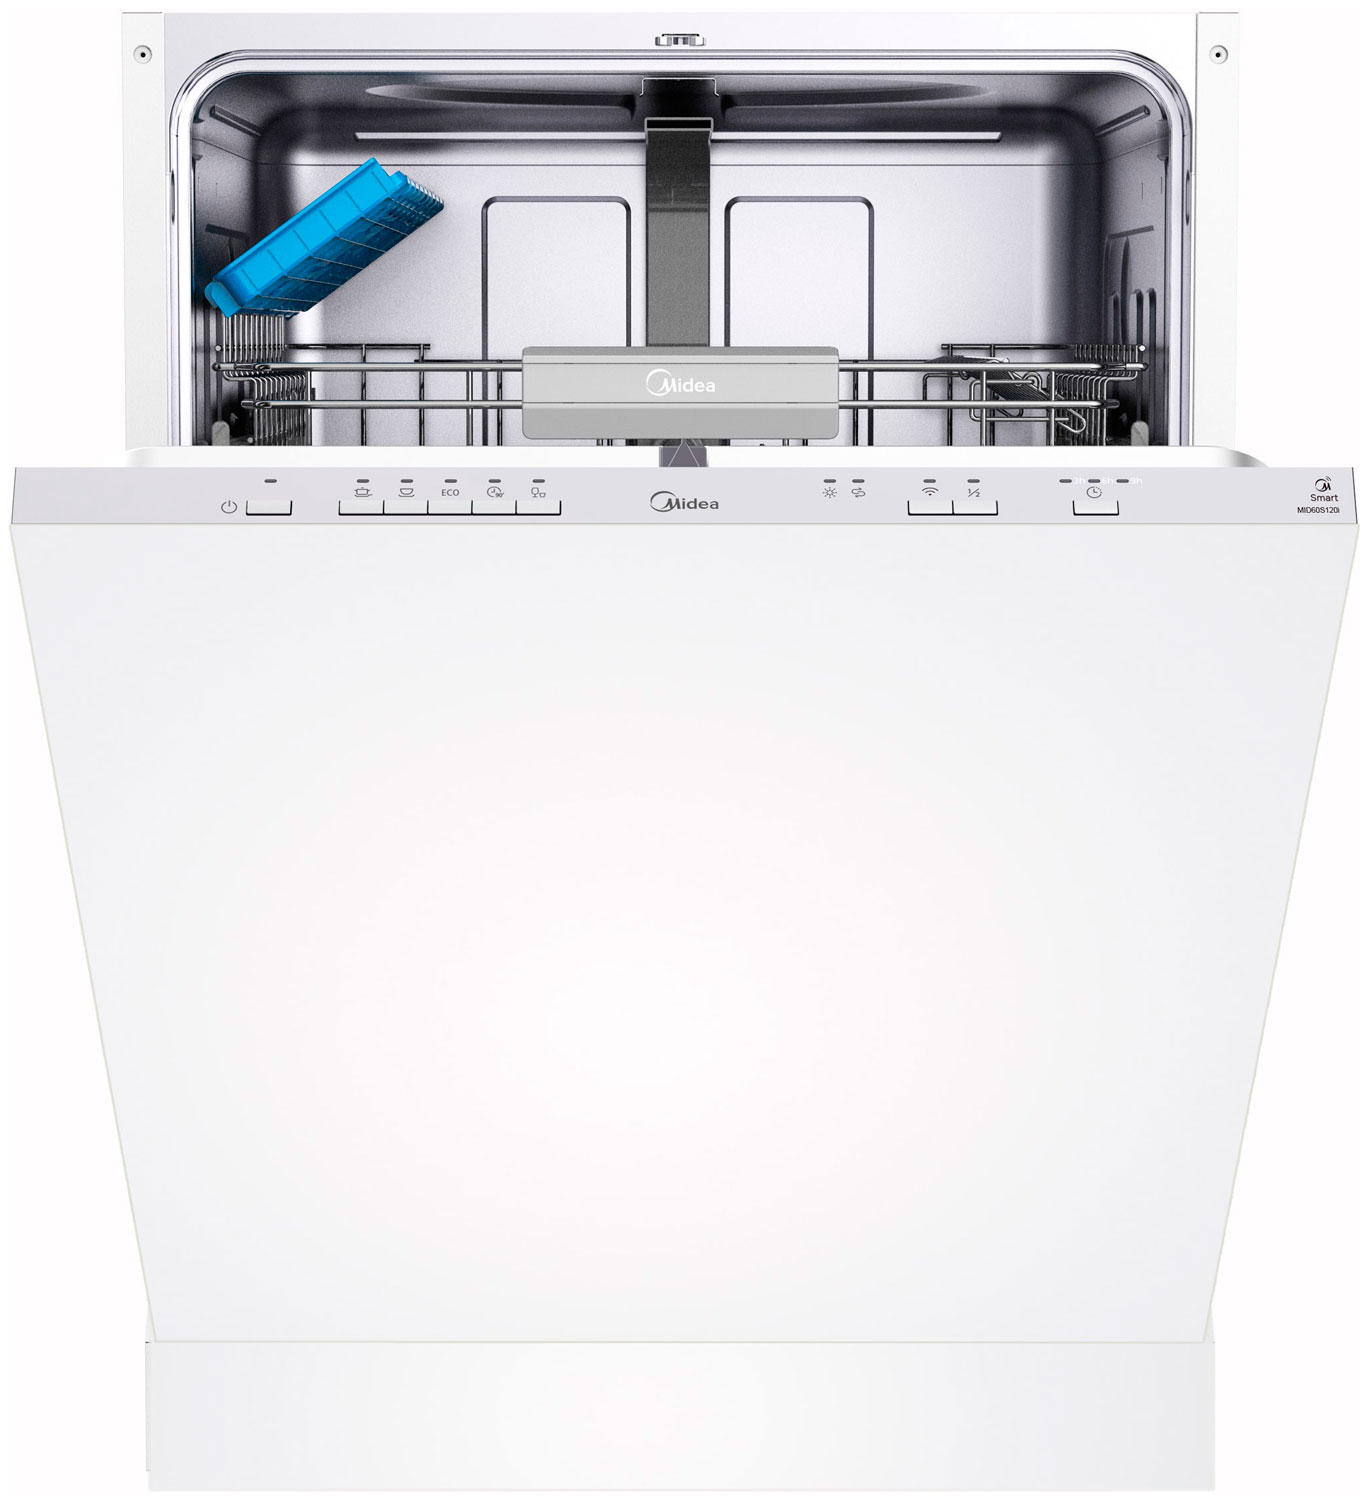 Встраиваемая посудомоечная машина Midea MID60S120i встраиваемая посудомоечная машина midea mid45s340i